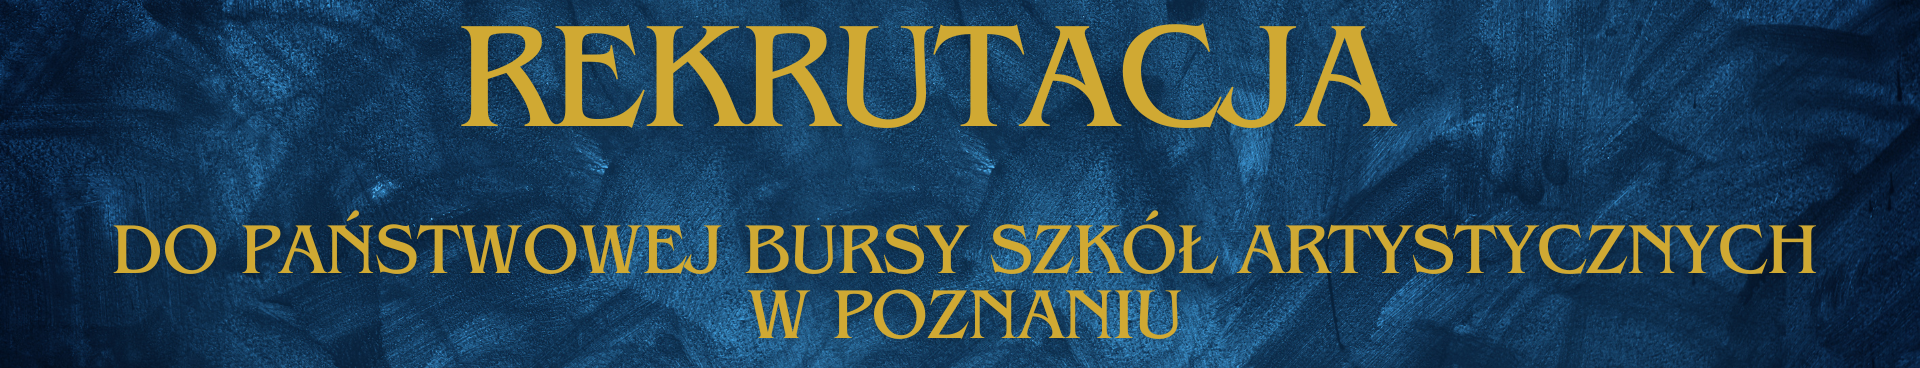 Grafika tekstowa na niebieskim tle z tekstem - Rekrutacja do Państwowej Bursy Szkół Artystycznych w Poznaniu 